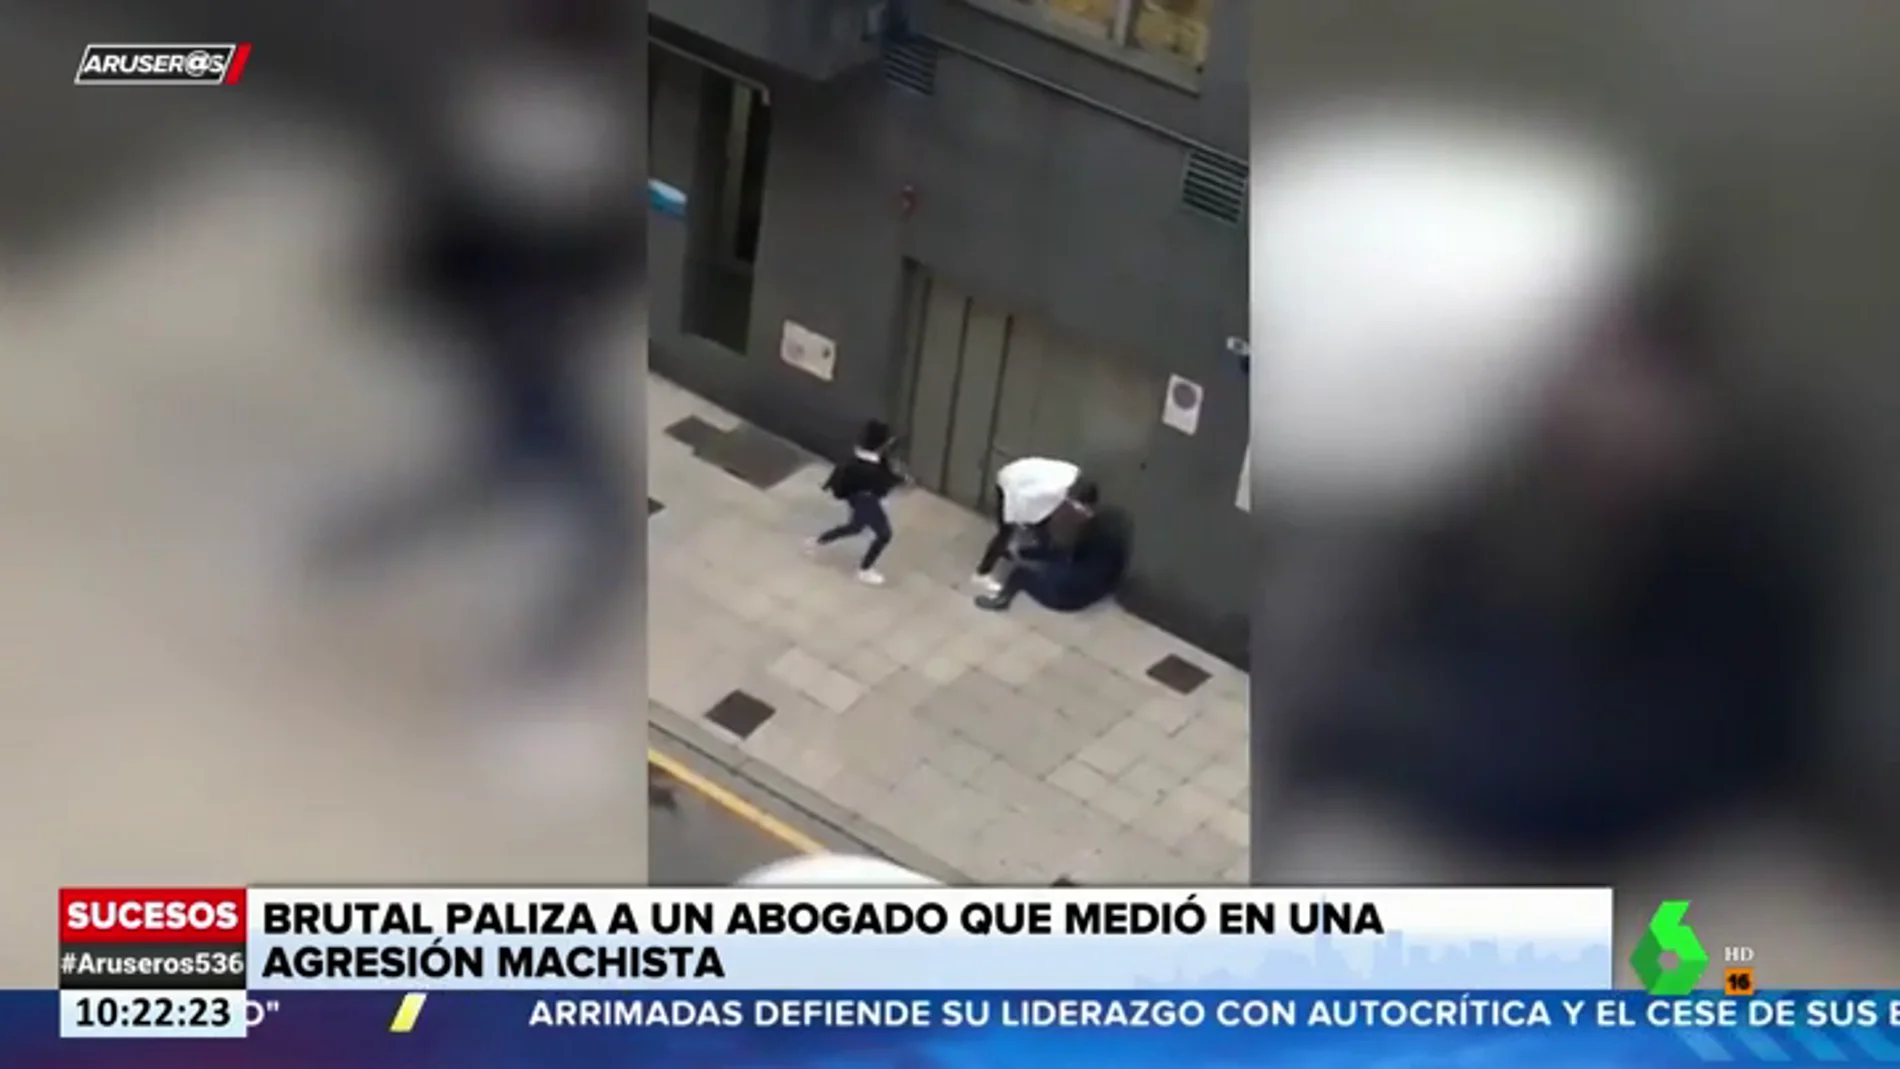 Brutal paliza a un abogado tras intentar evitar una agresión machista en Oviedo